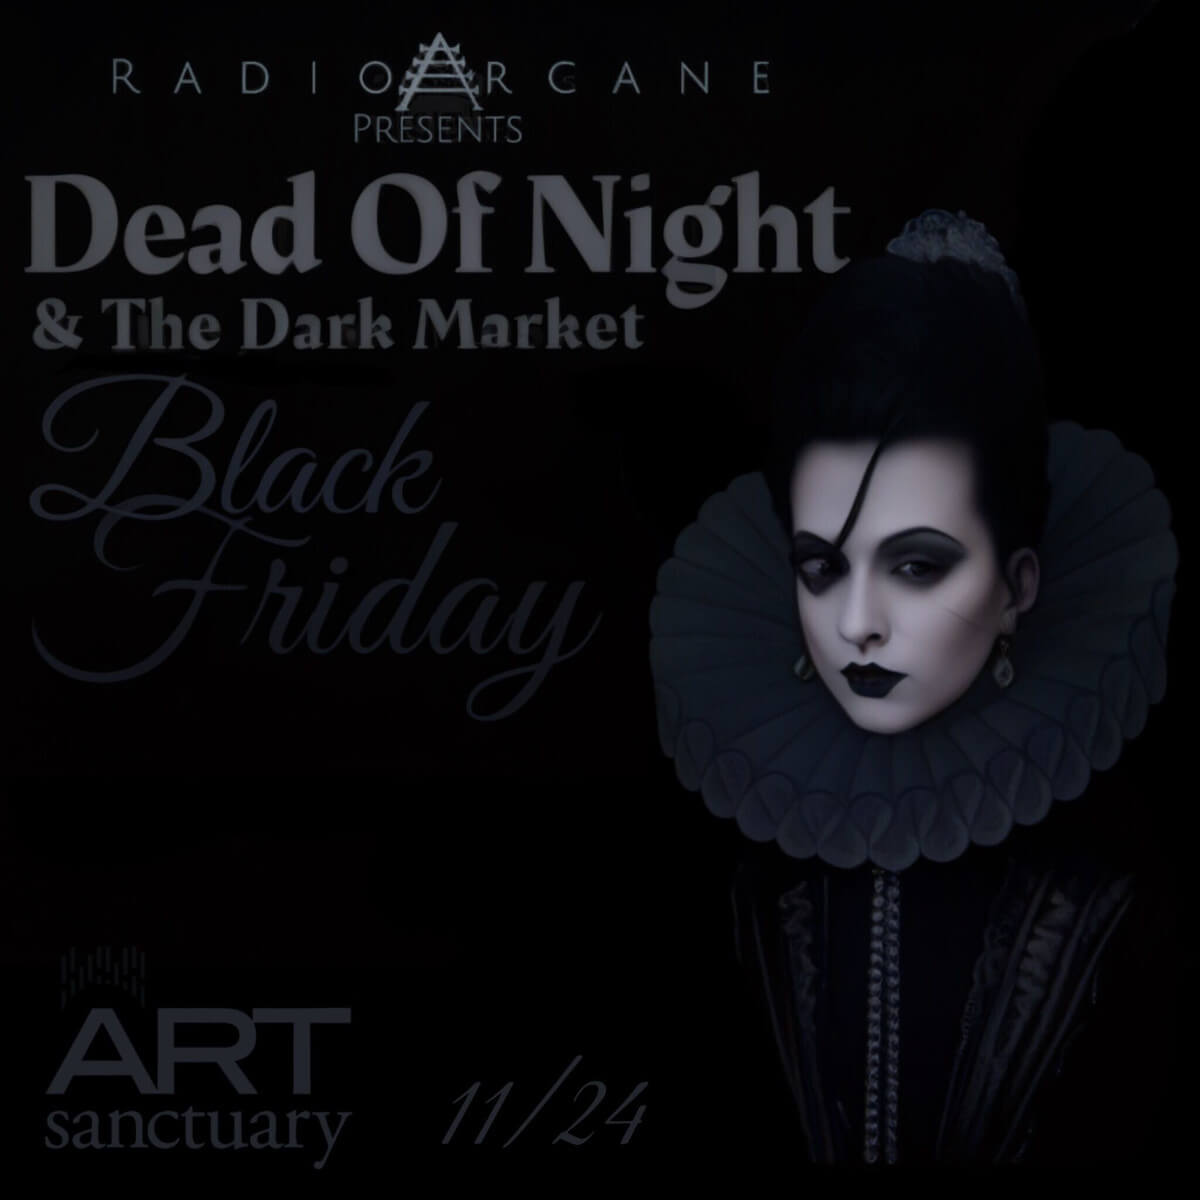 Dead Of Night & The Dark Market - Black Friday